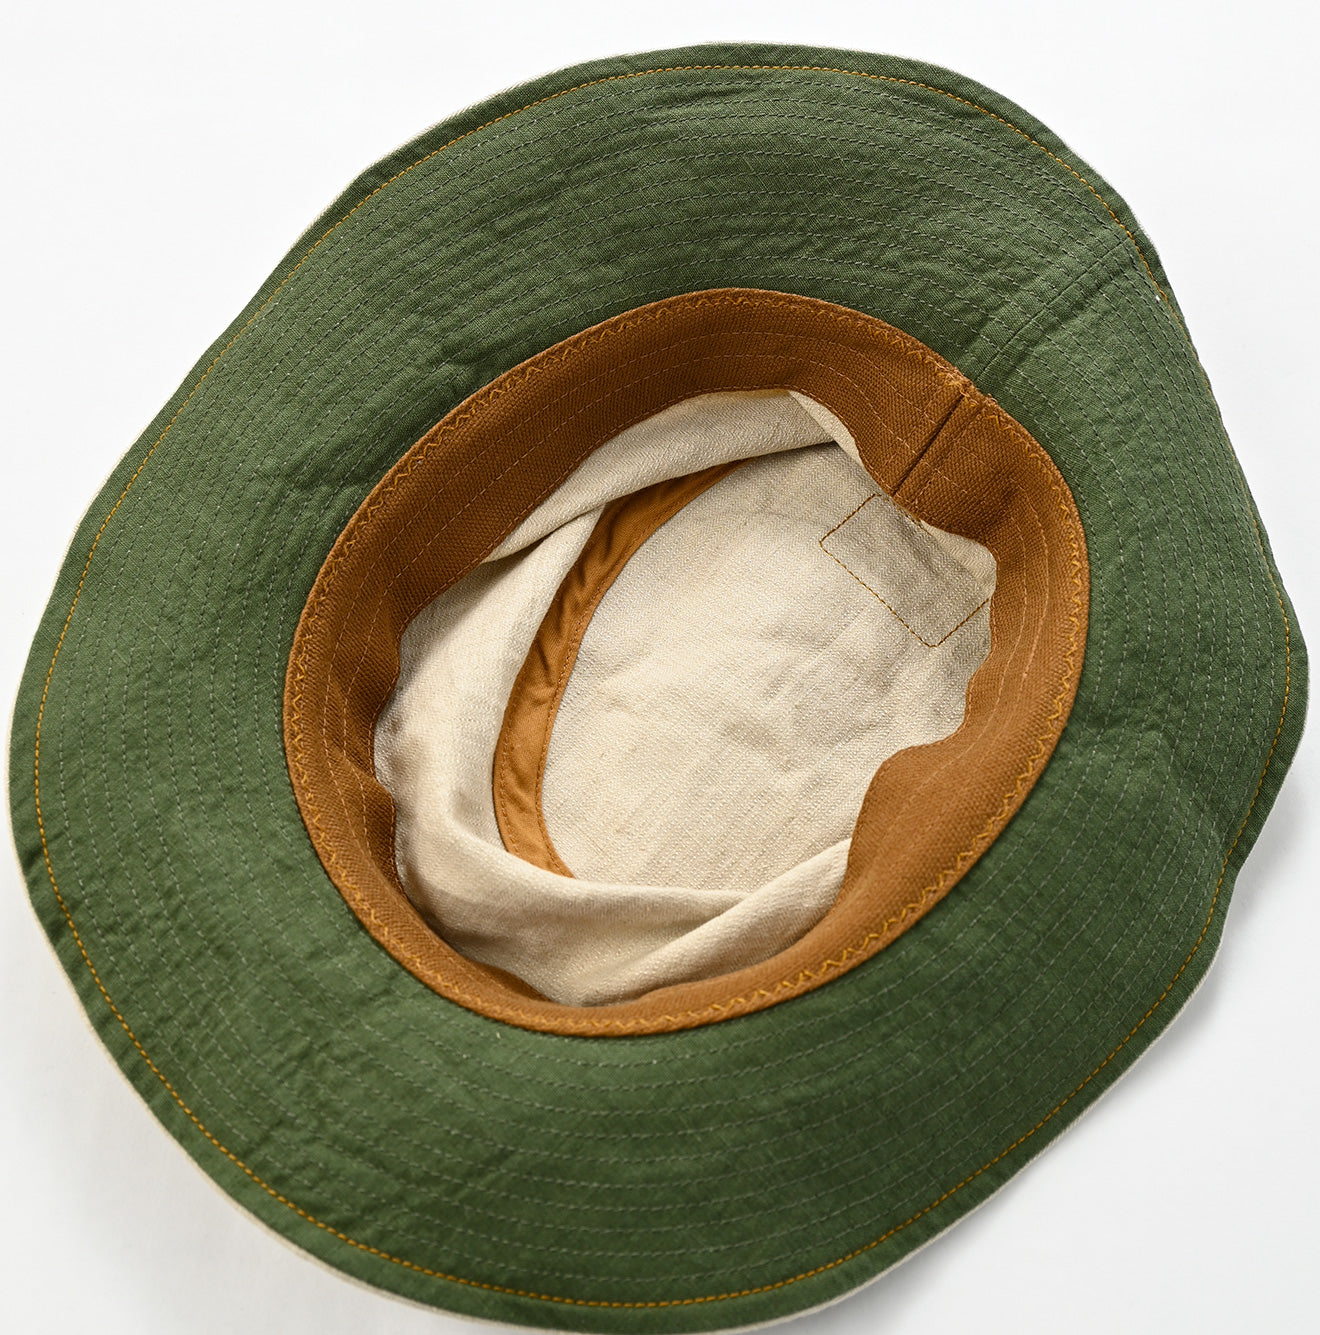 Linen Herringbone Hat